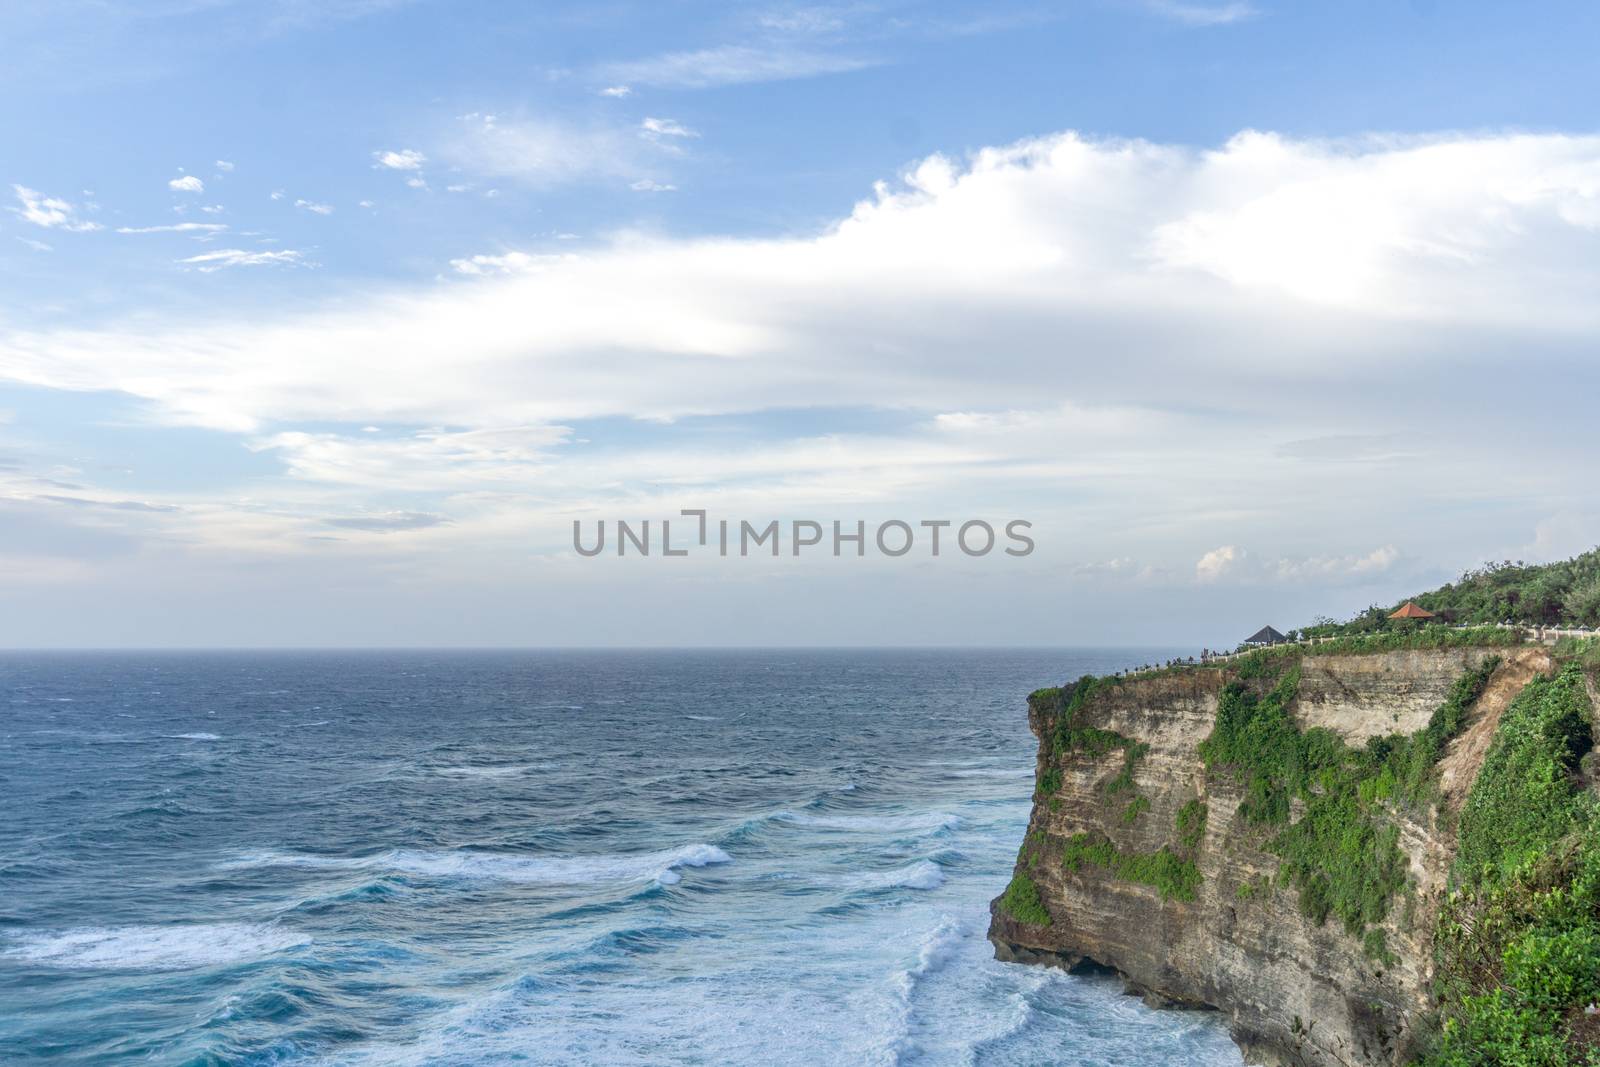 Uluwatu temple in the sea in Bali Indonesia